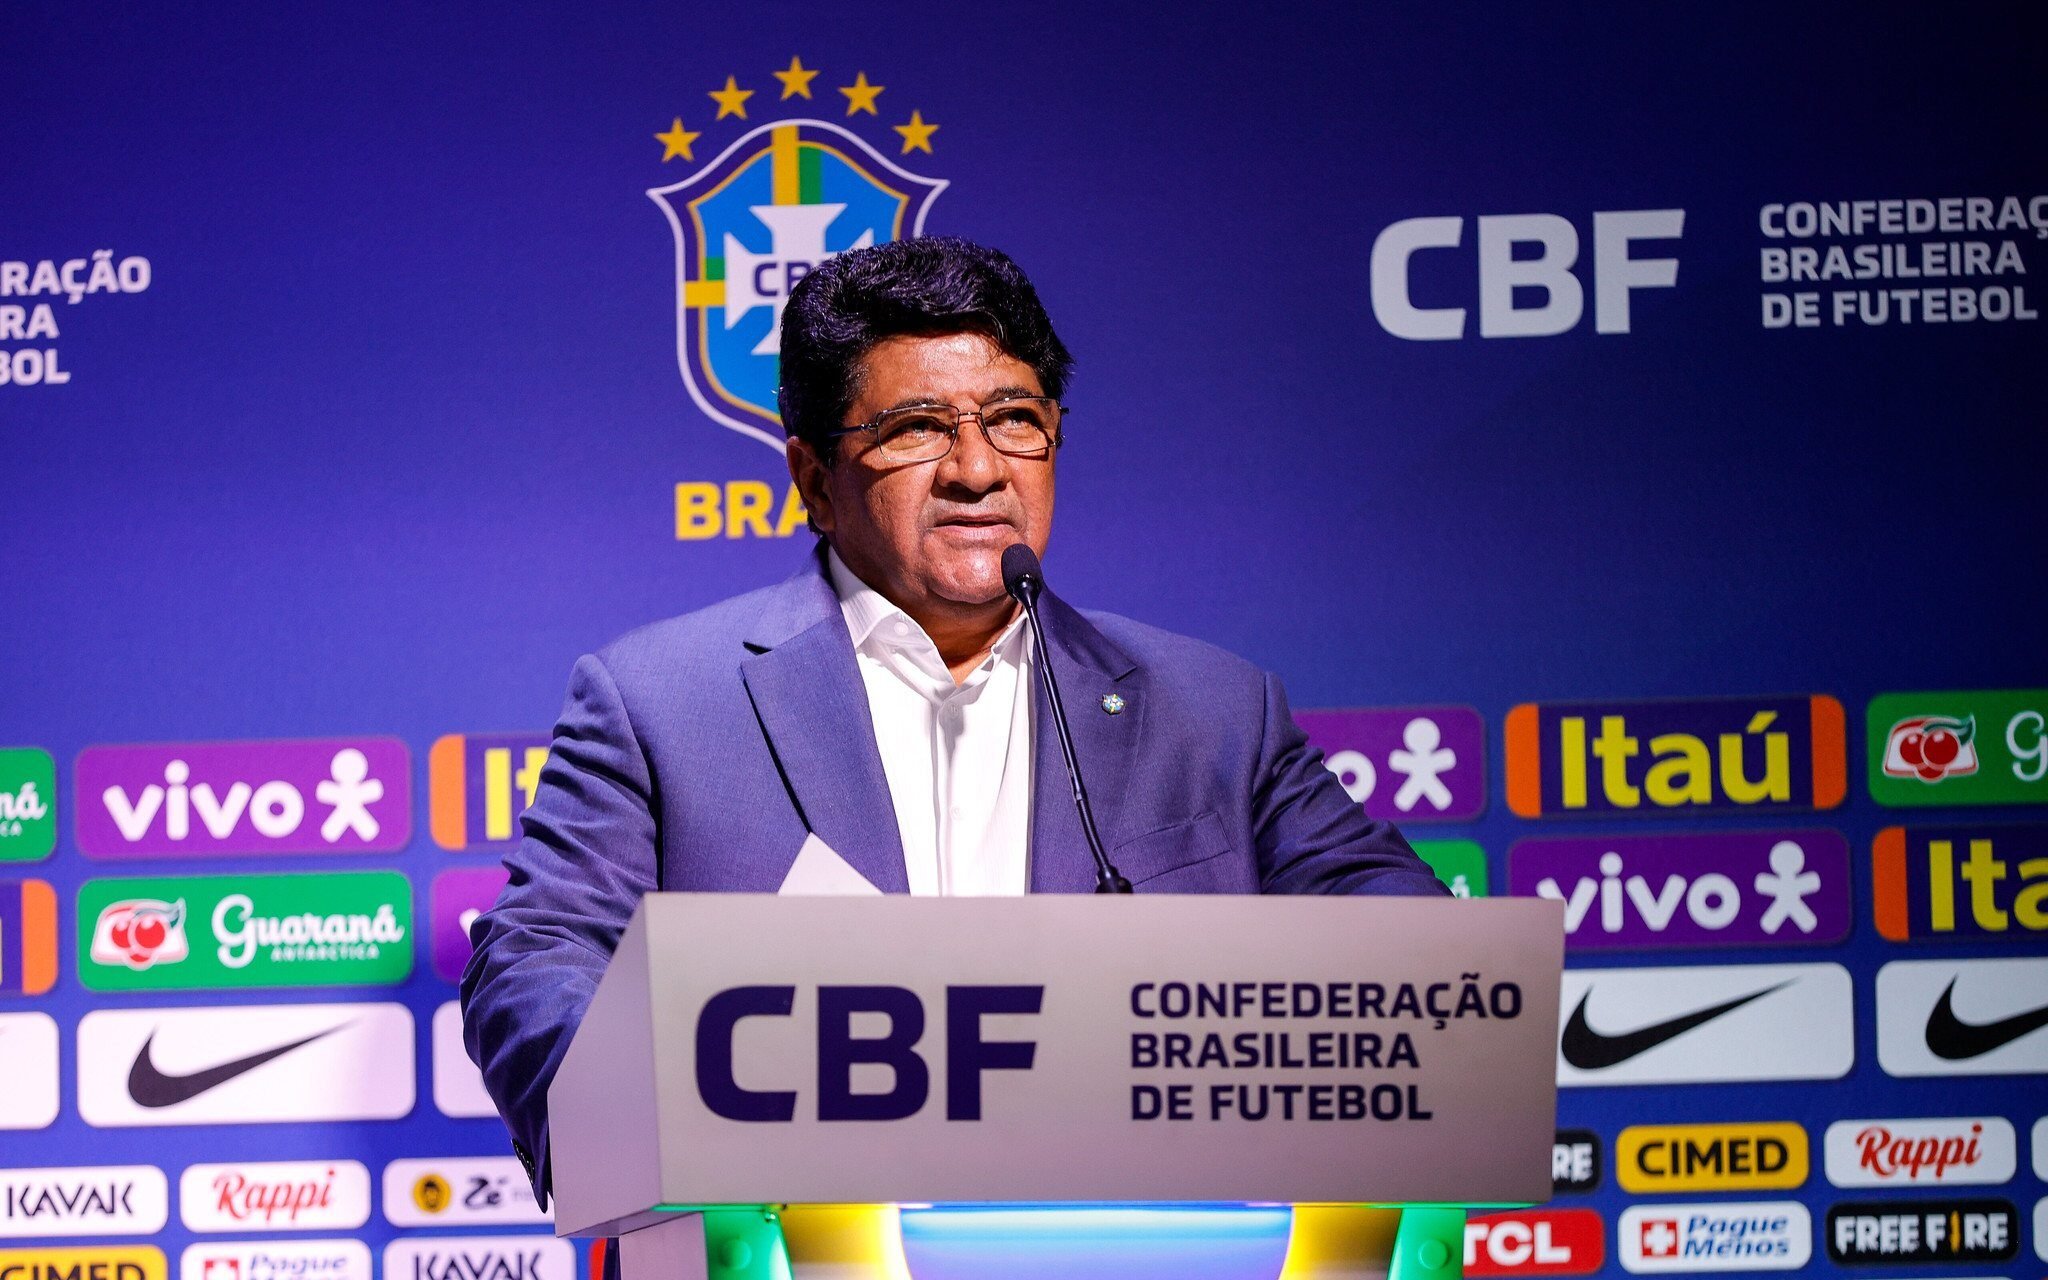 Programas do Governo Federal e da CBF fortalecem o futebol